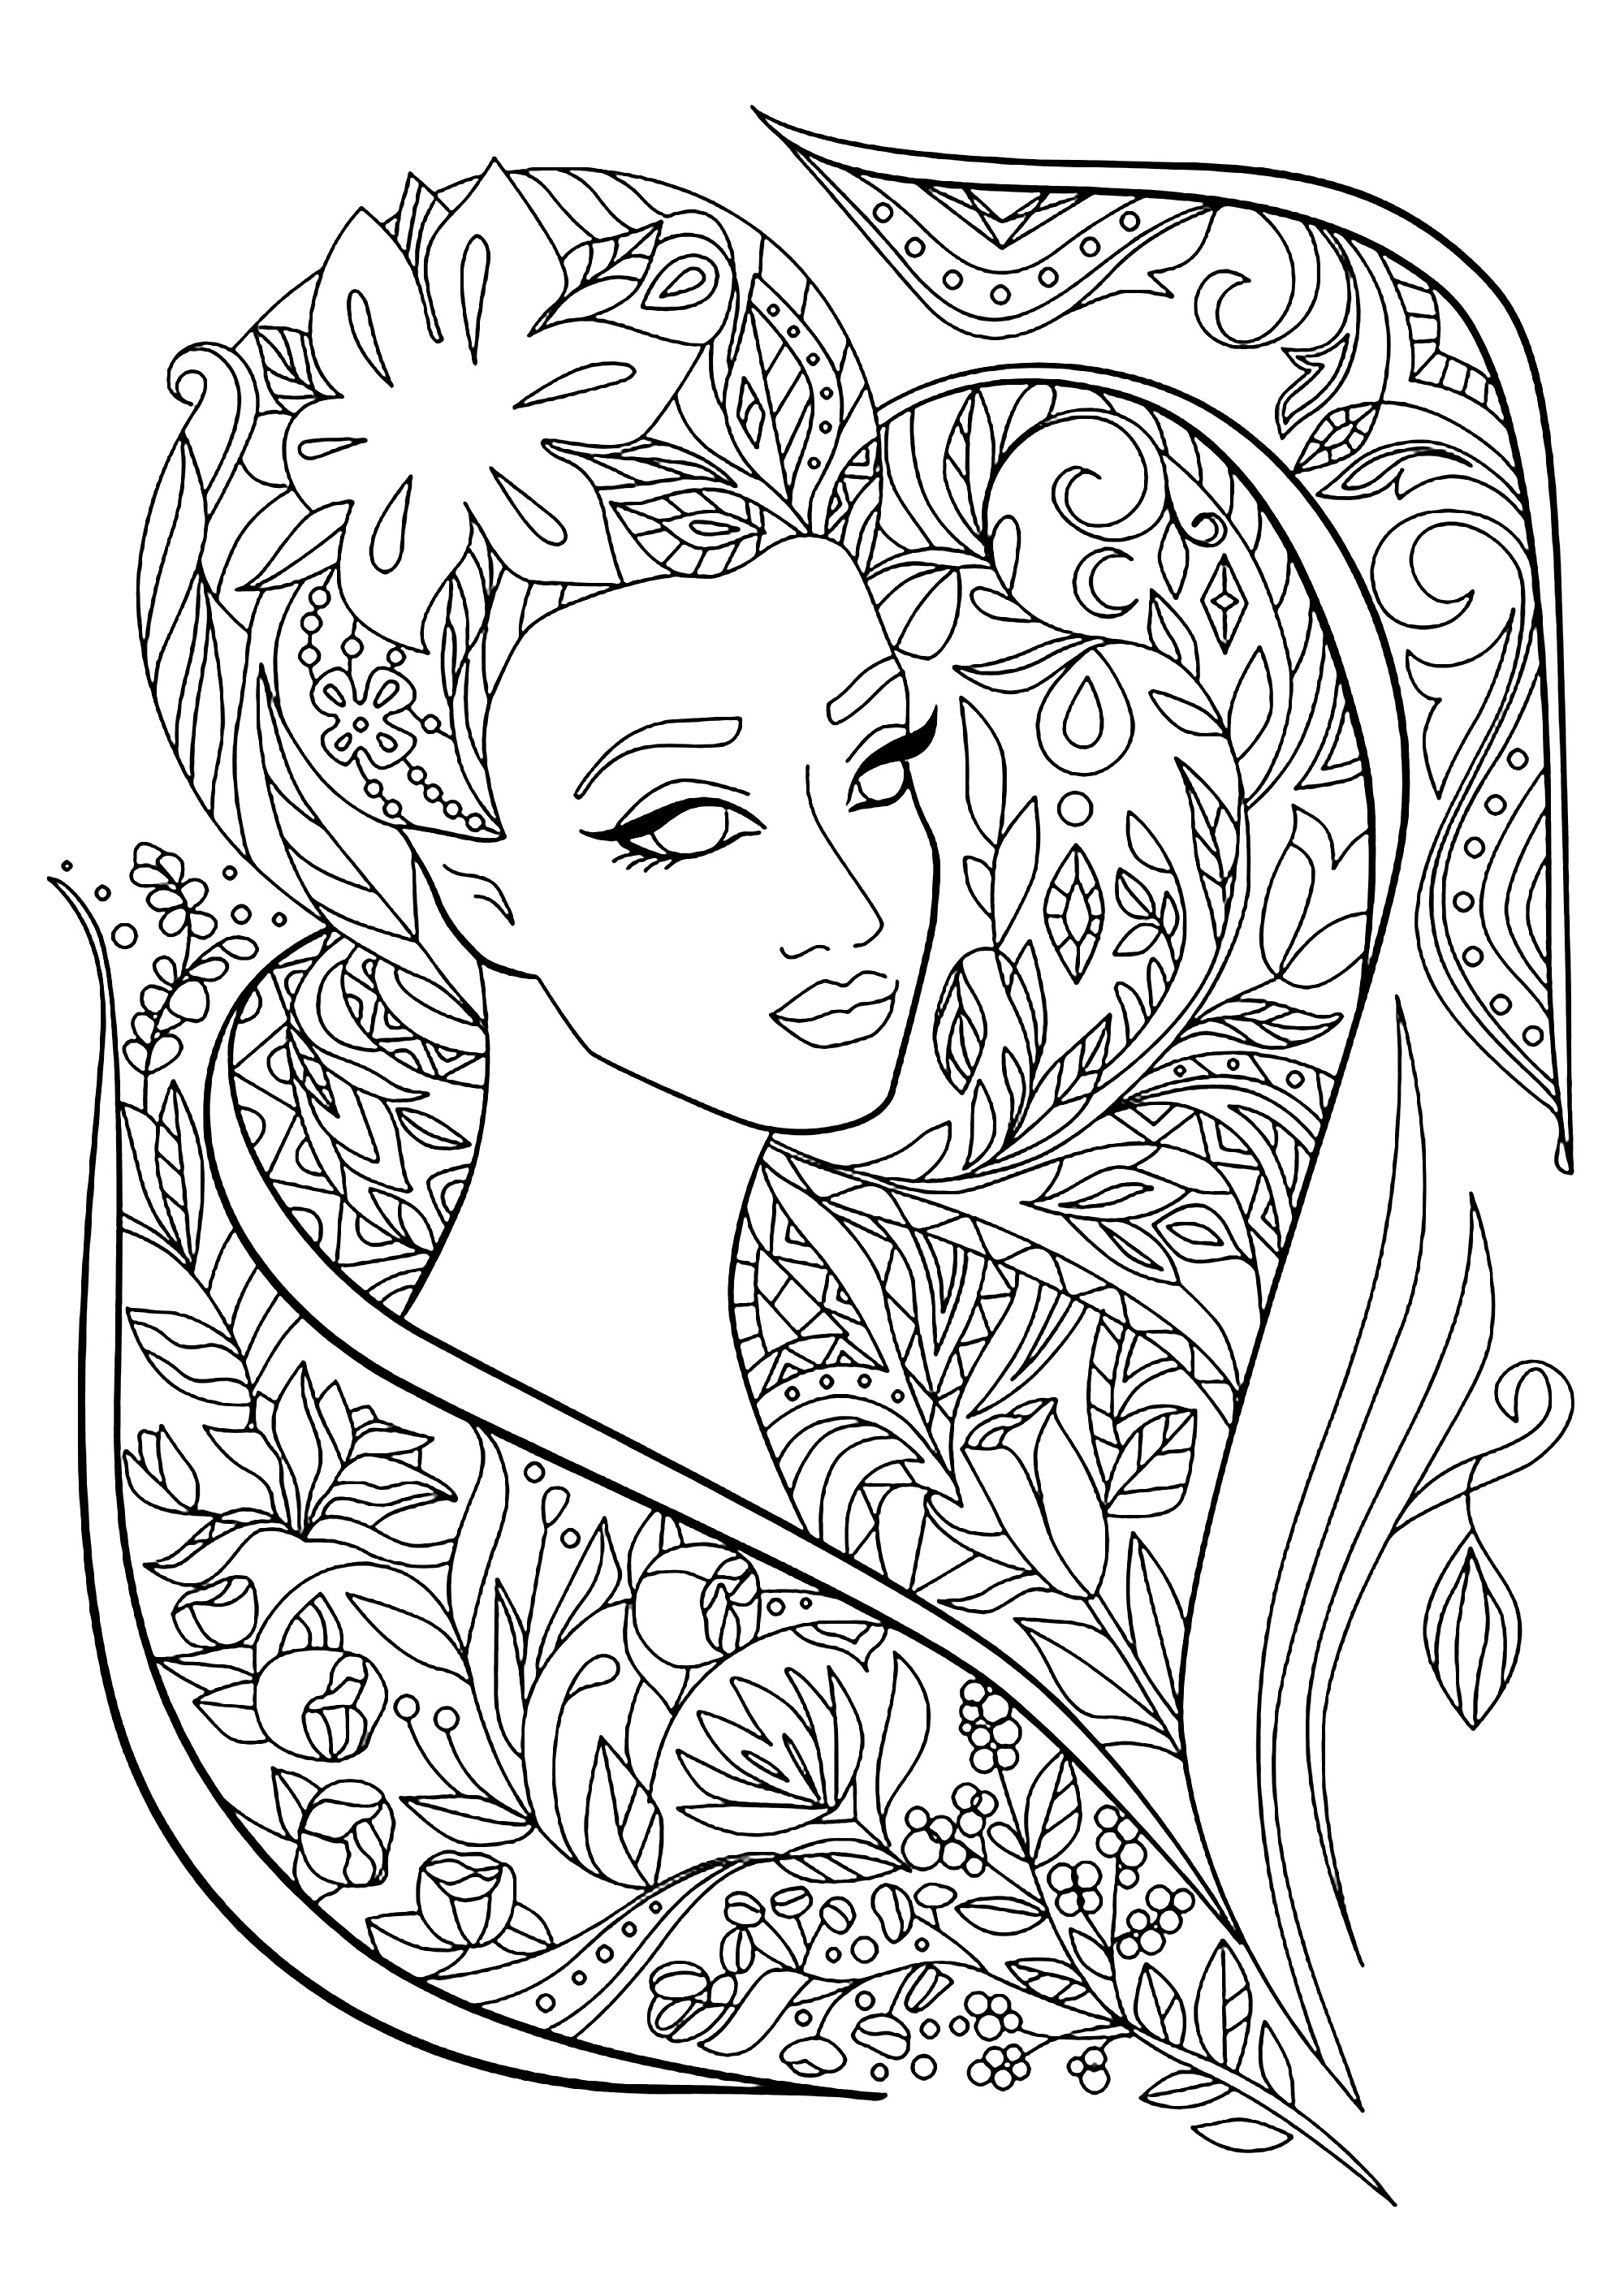 Magnifique coloriage avec le visage d'une femme entouré de fleurs et de feuilles